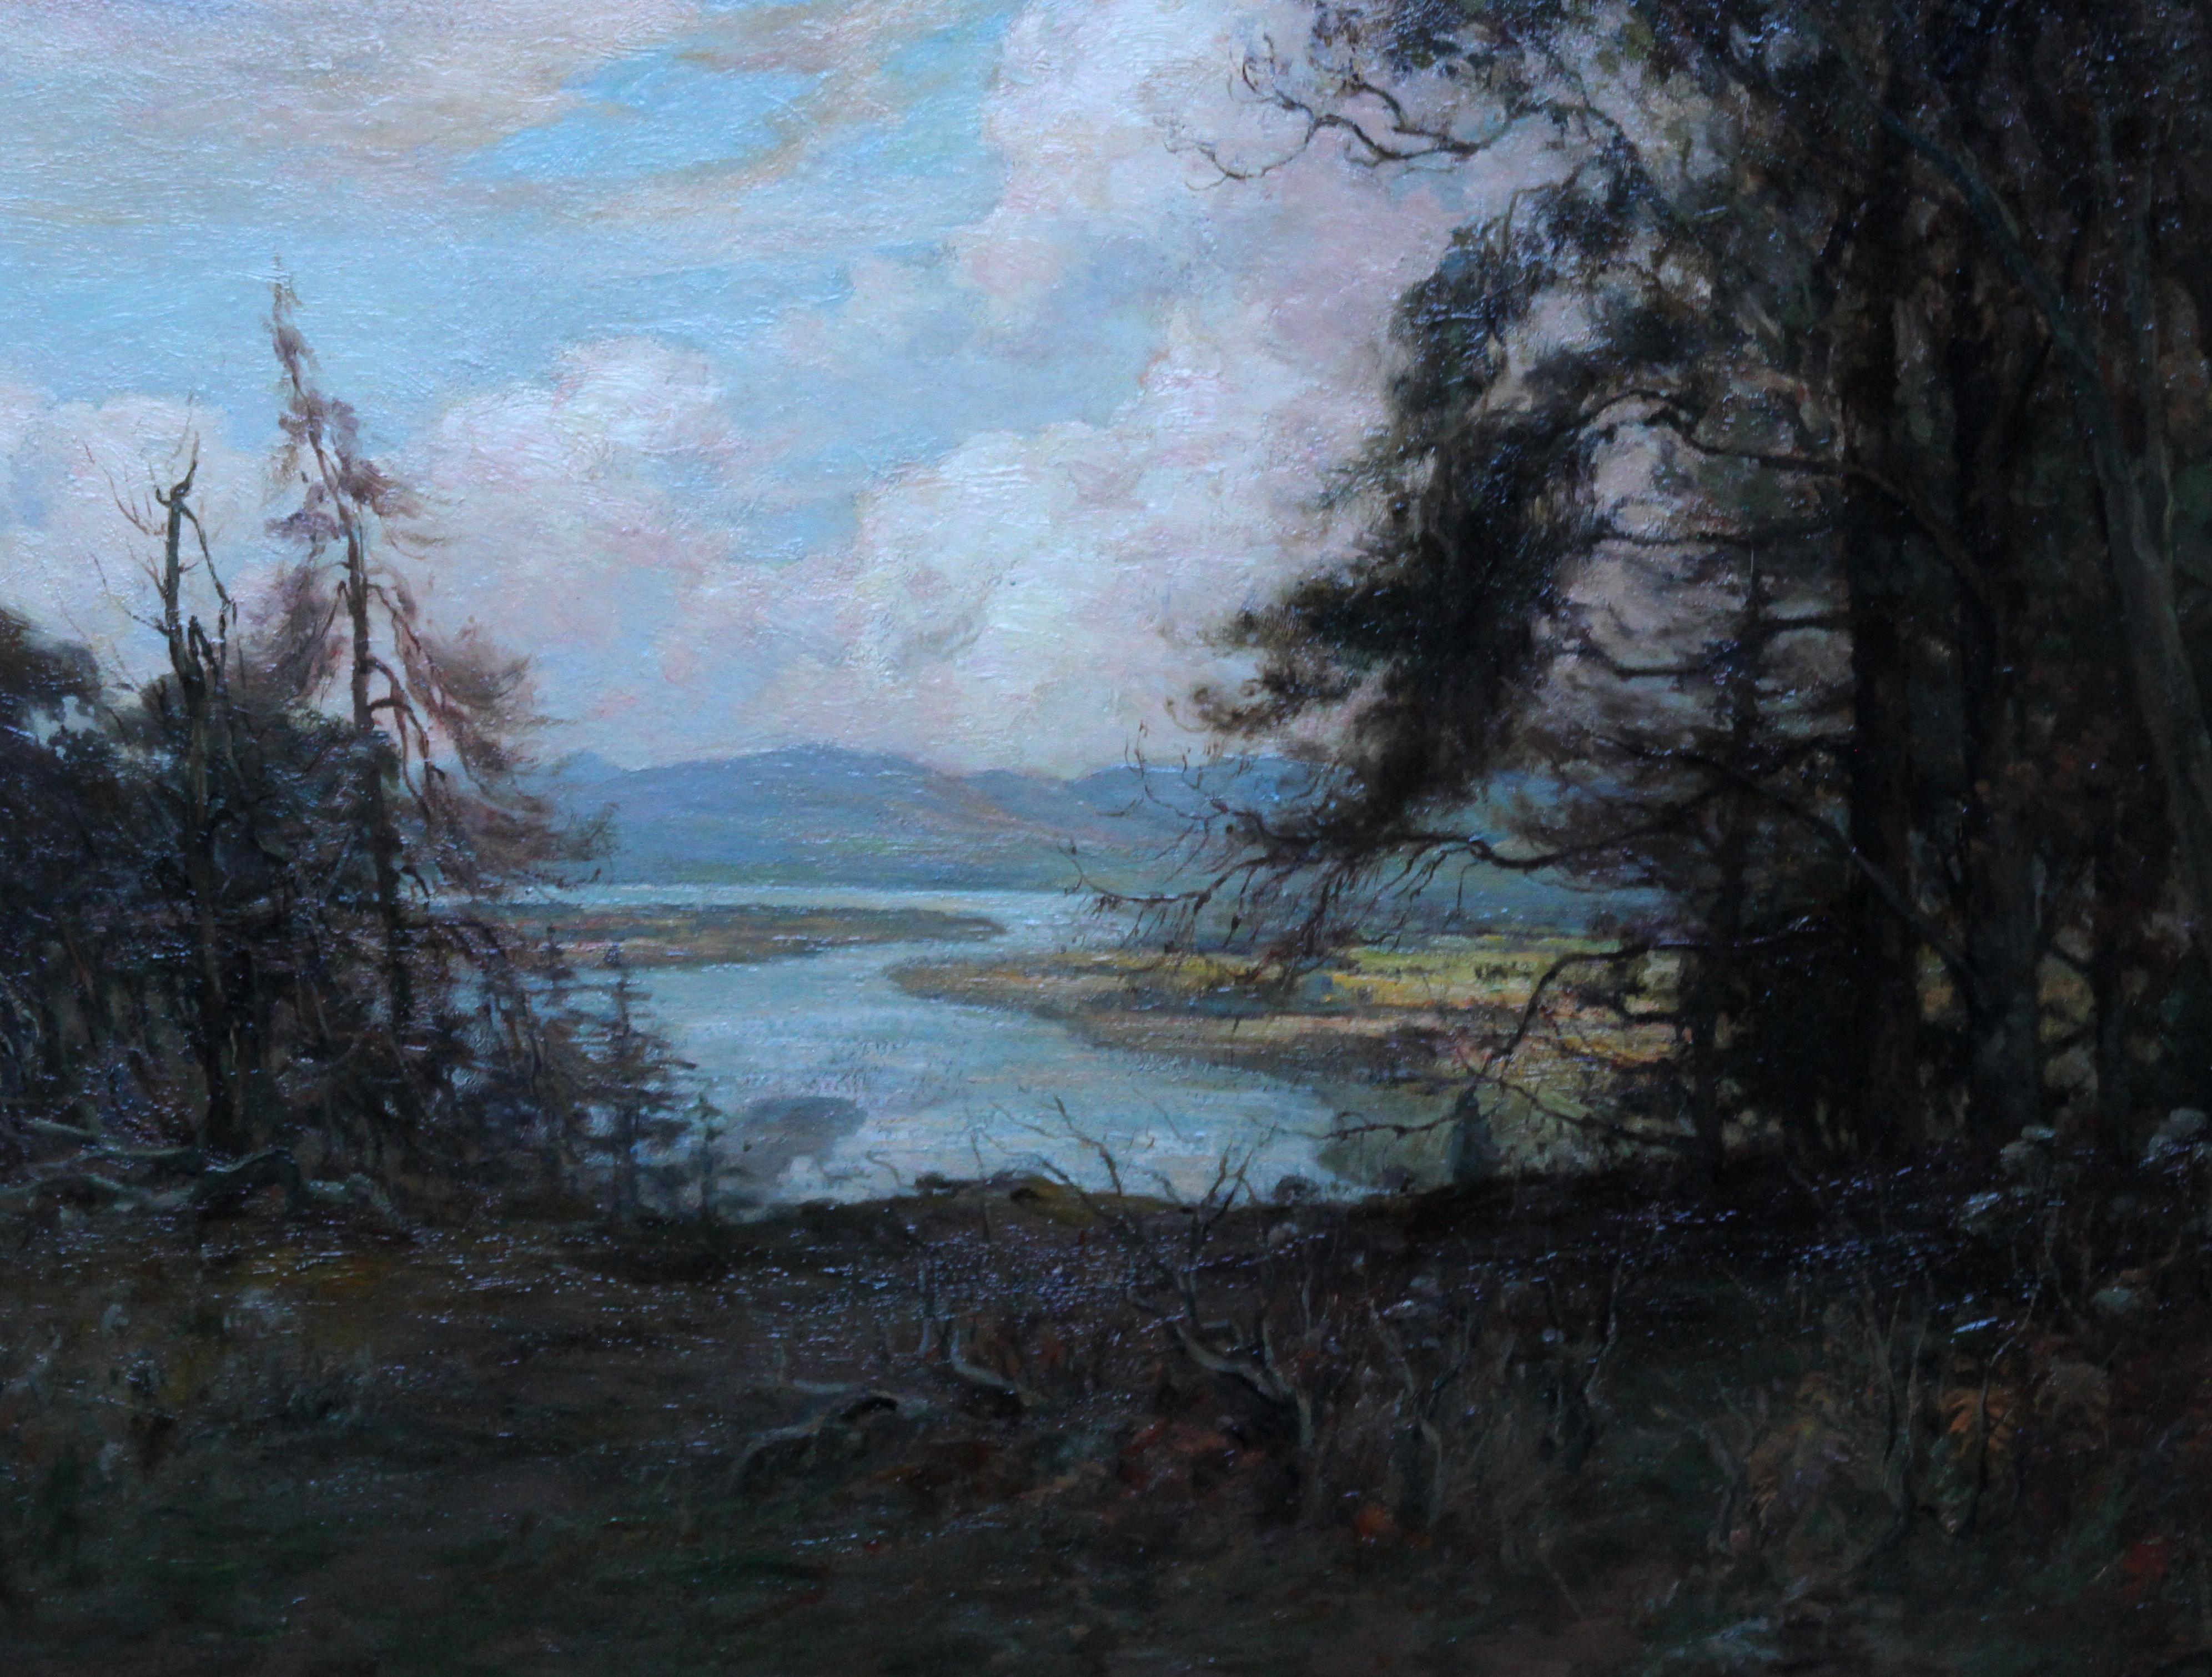 Fluss Tay Landschaft Schottland – schottische Kunst, viktorianisches impressionistisches Ölgemälde (Impressionismus), Painting, von Joseph Milne